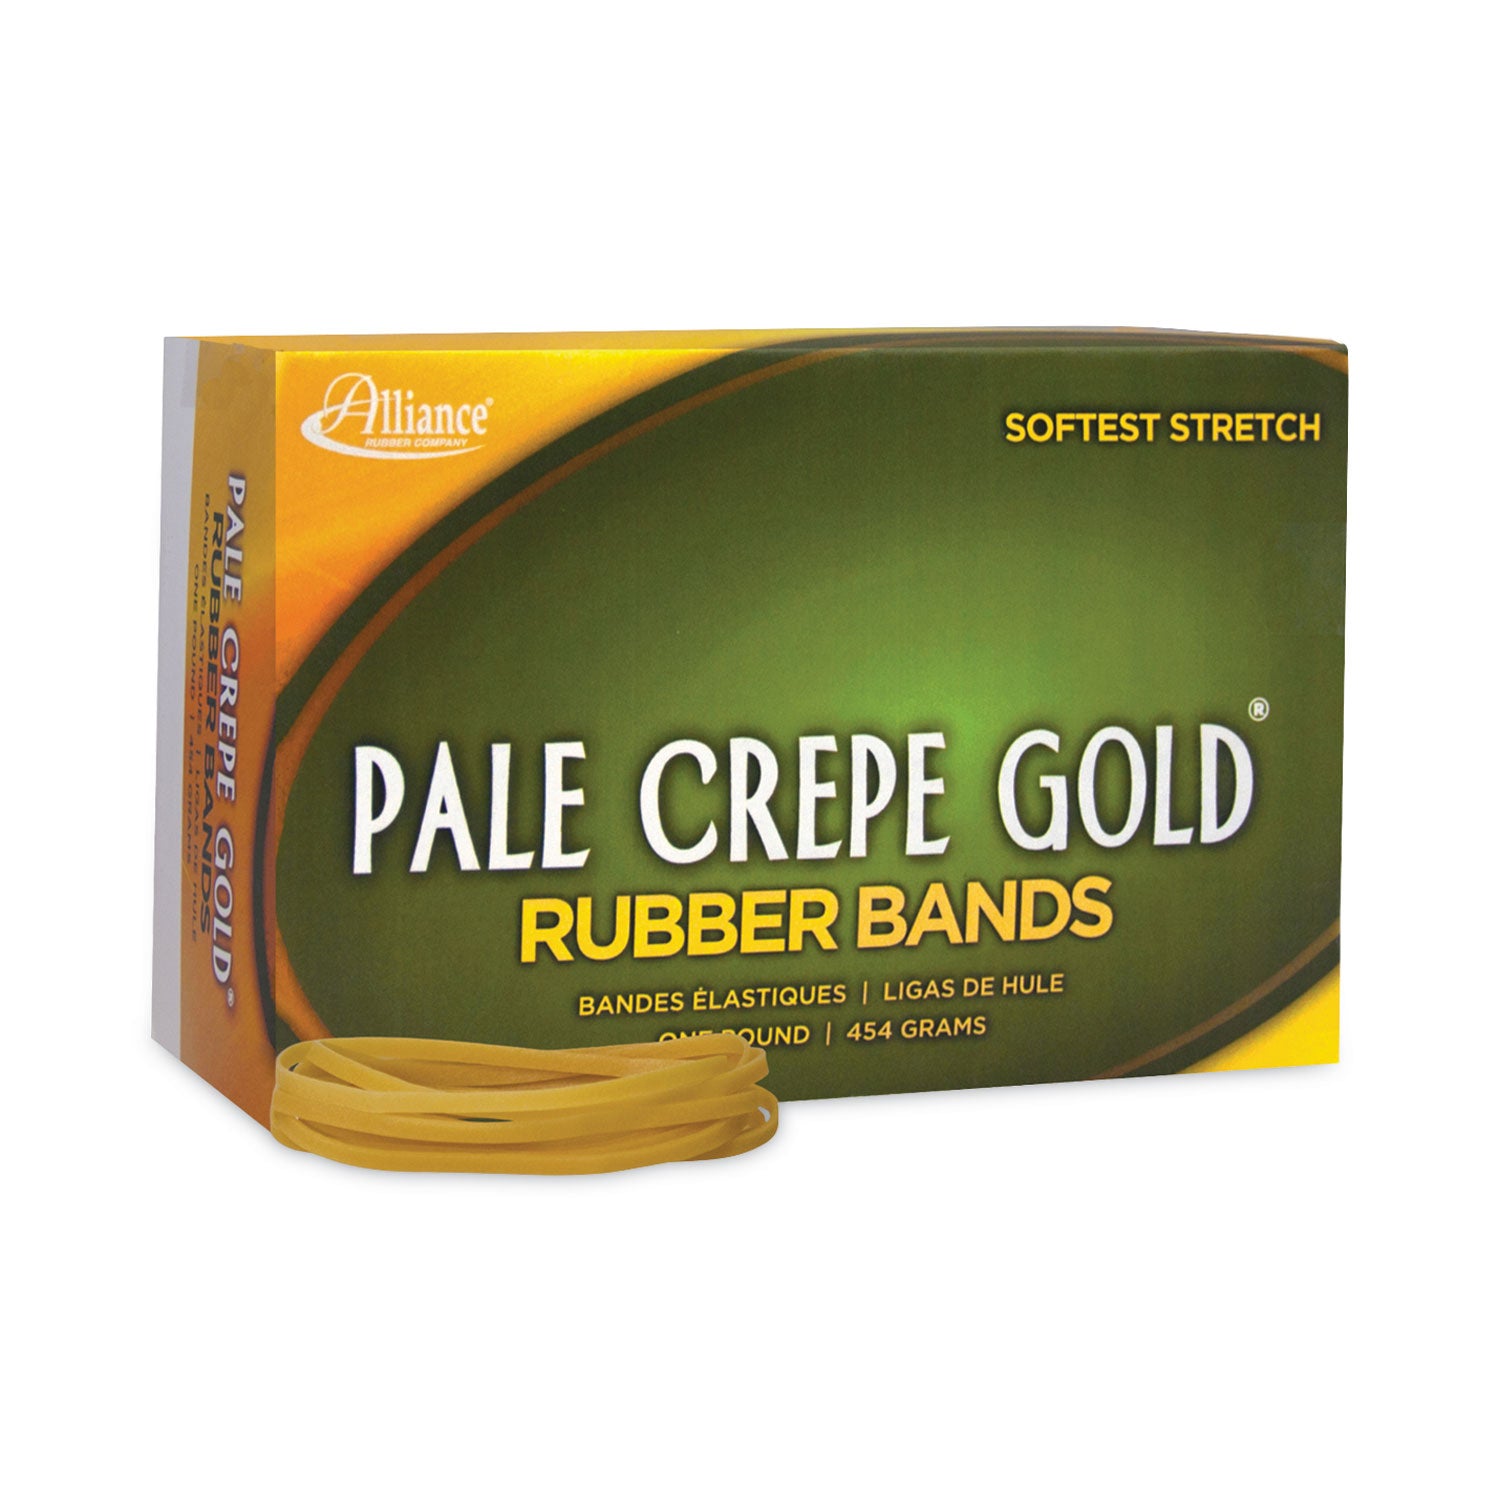 Pale Crepe Gold Rubber Bands, Size 33, 0.04" Gauge, Golden Crepe, 1 lb Box, 970/Box - 